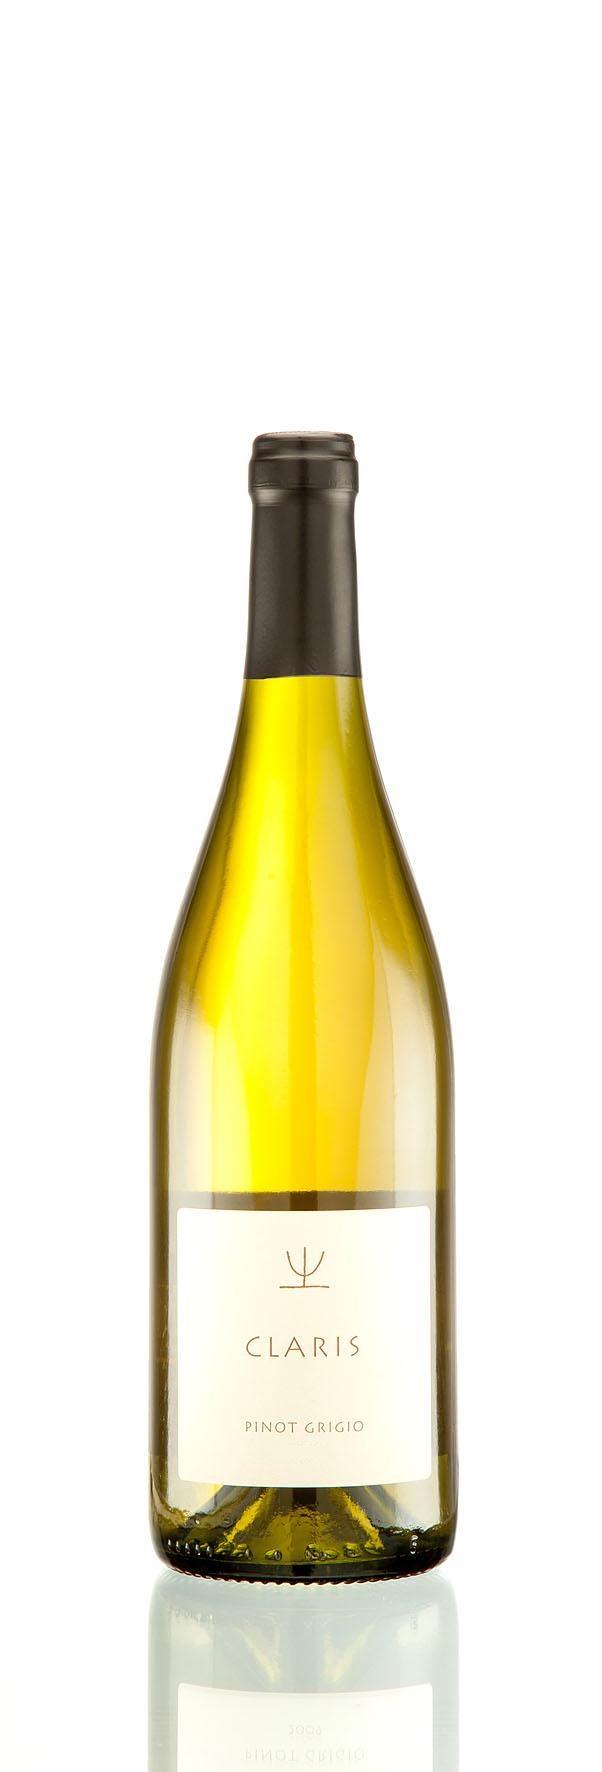 GRADAZIONE ALCOLICA 12% Vol. Veneto - Colli Pinot Grigio Indicazione Geografica Tipica Uve vinificate in bianco.